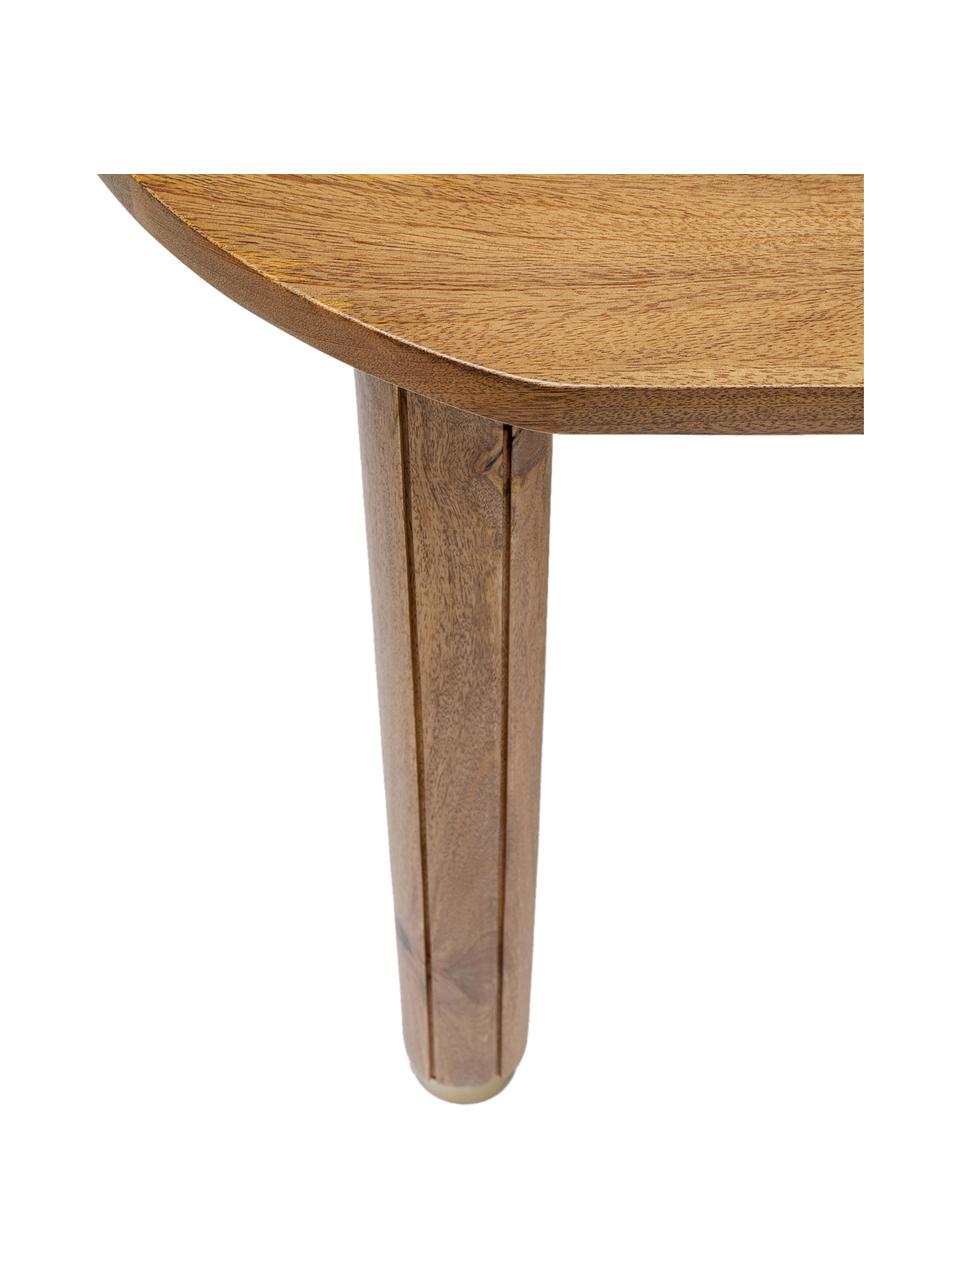 Schreibtisch Grace aus Mangoholz, Beine: Mangoholz, lackiert, Mangoholz, B 110 x T 55 cm